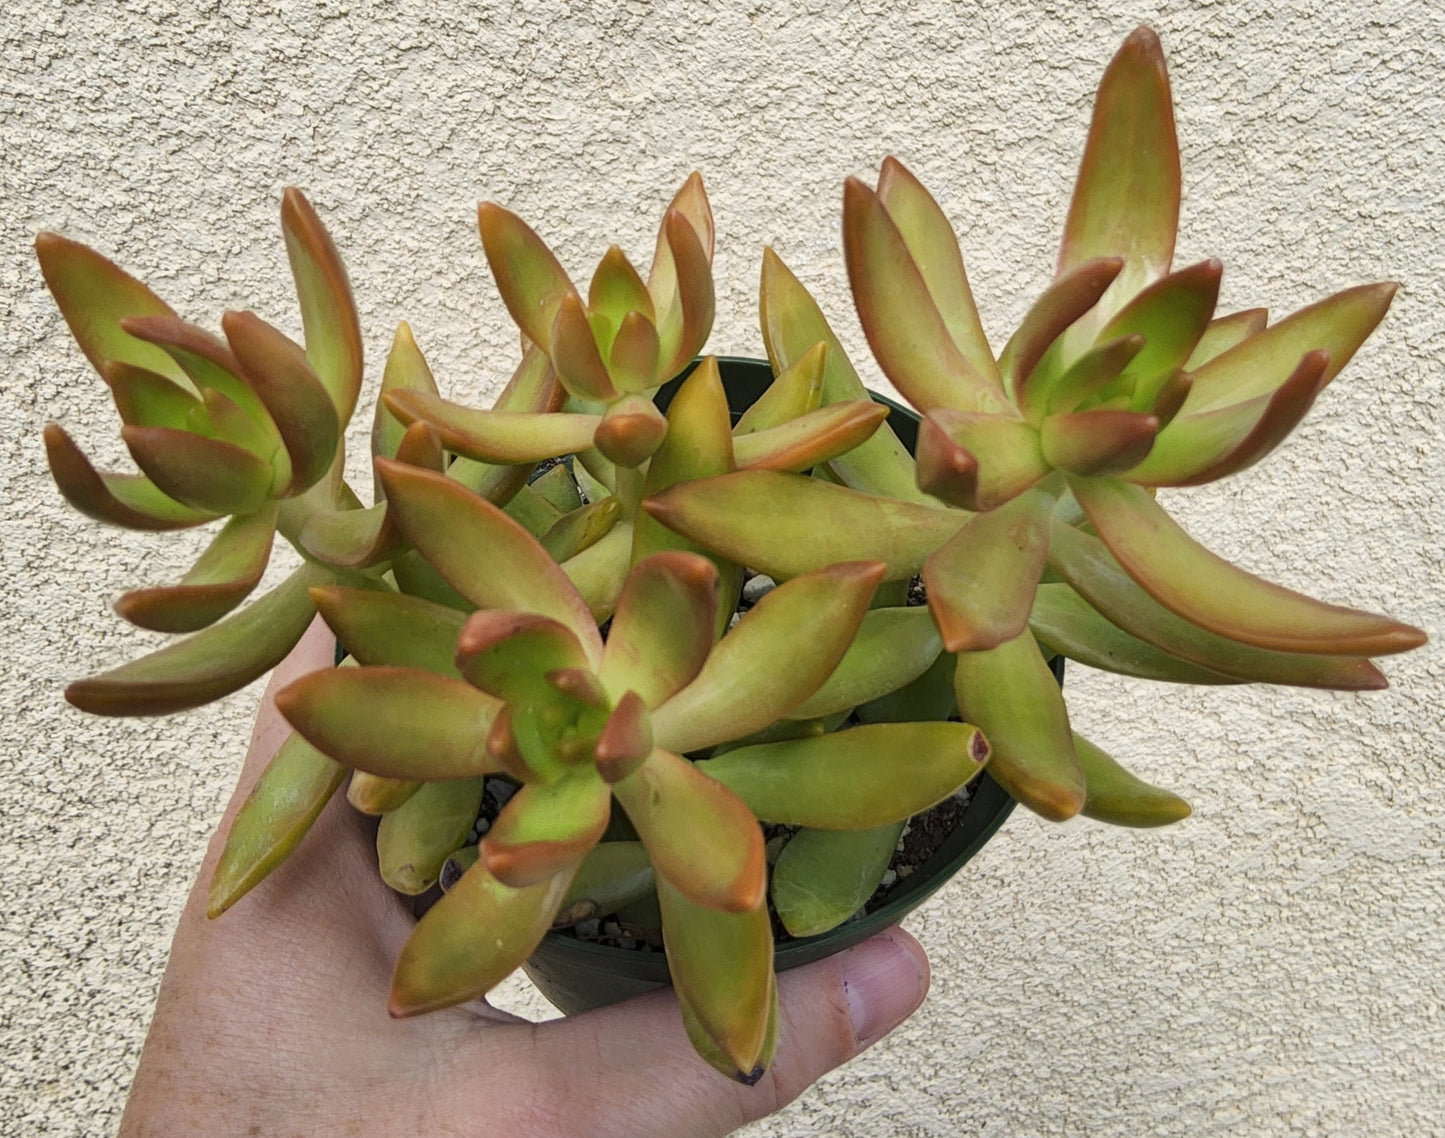 Sedum adolphii Live Succulent Growing in 4 Inch